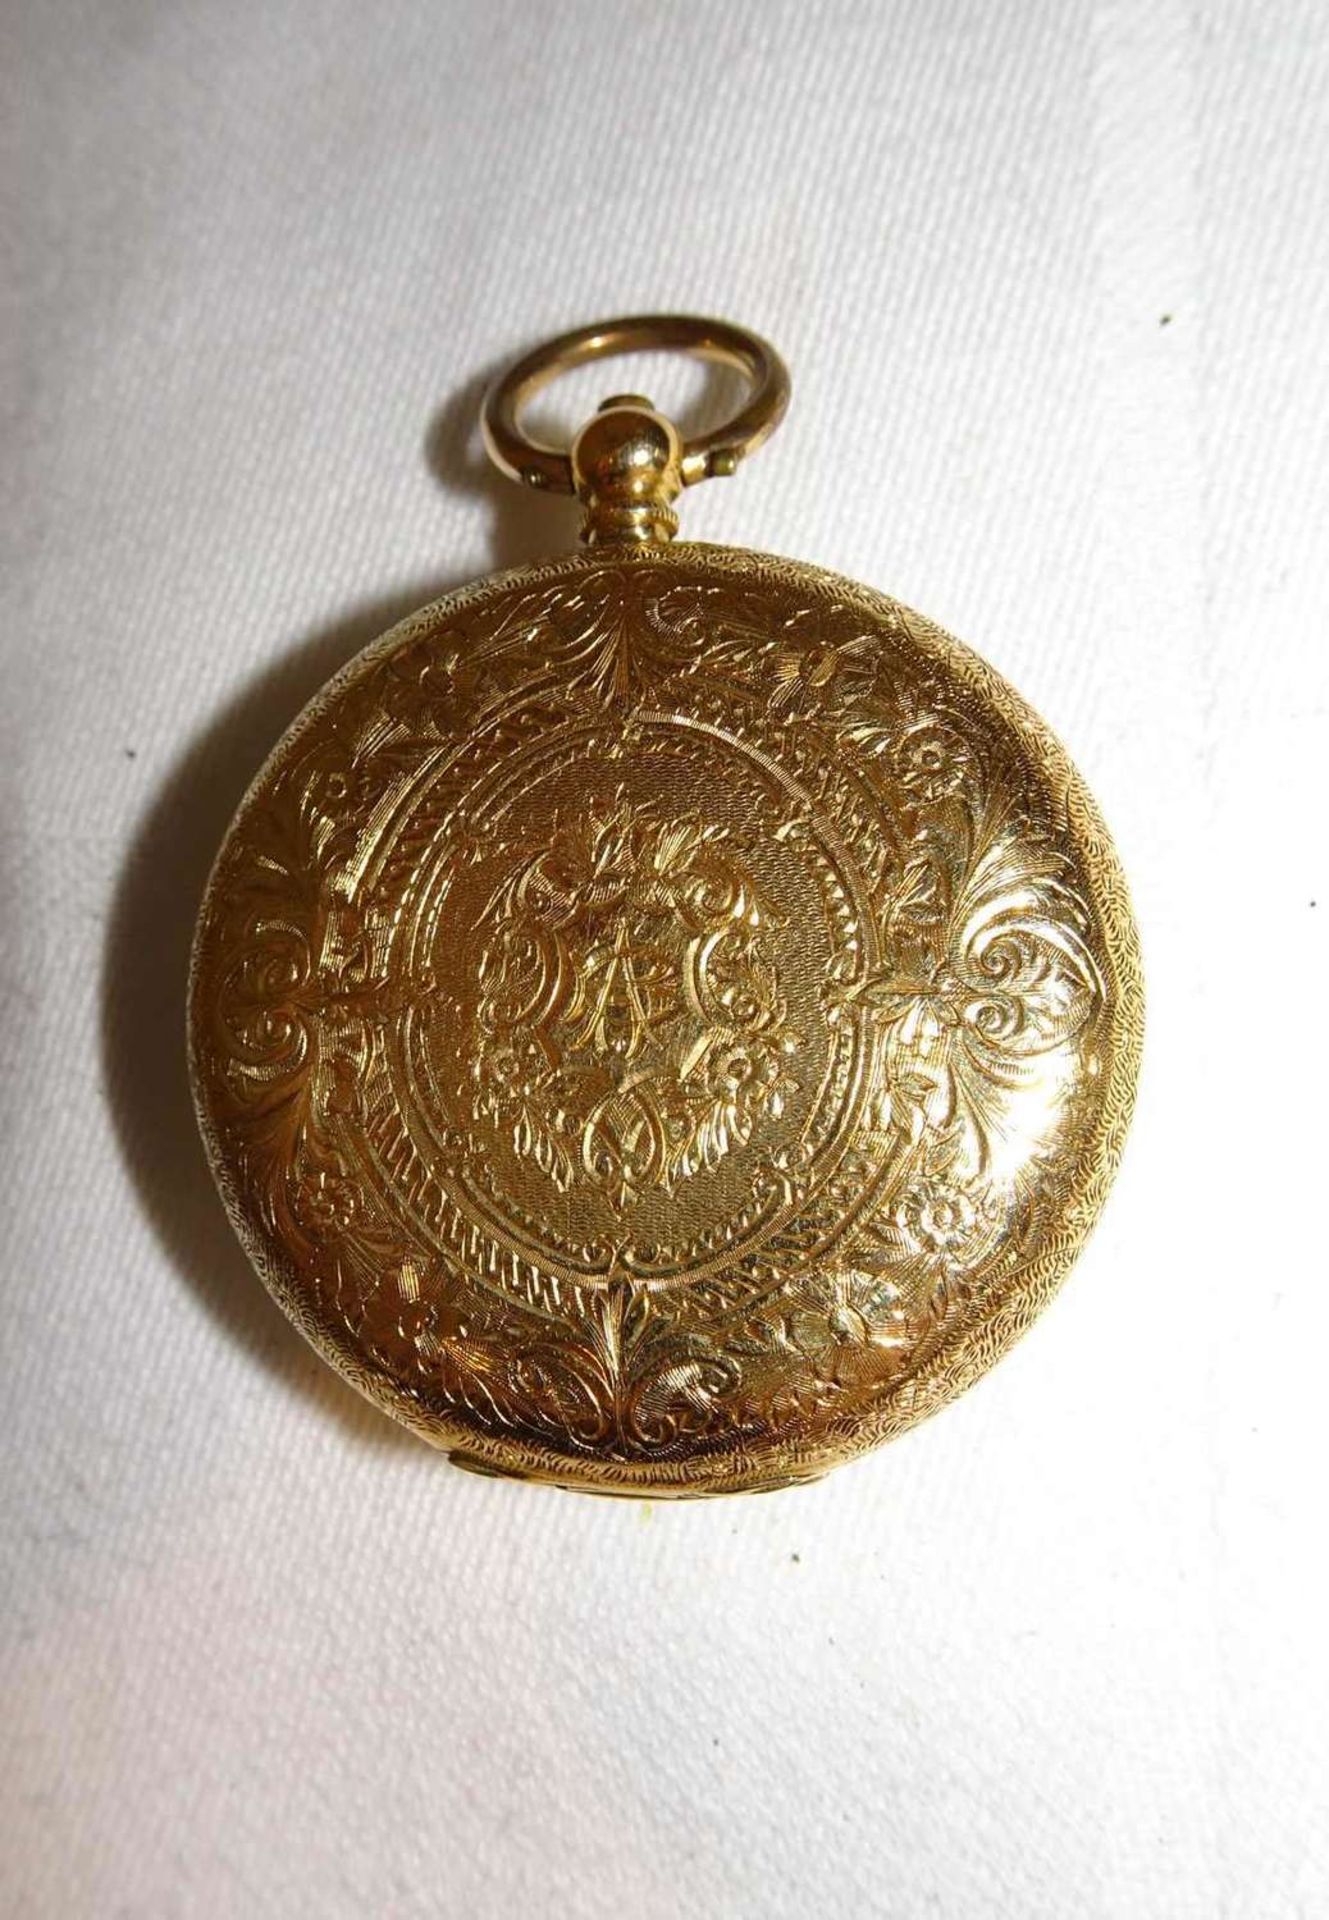 Taschenuhr, 750er Gelbgold, Innendeckel Metall. Pocket watch, 750 yellow gold, inner cover metal. - Bild 2 aus 5